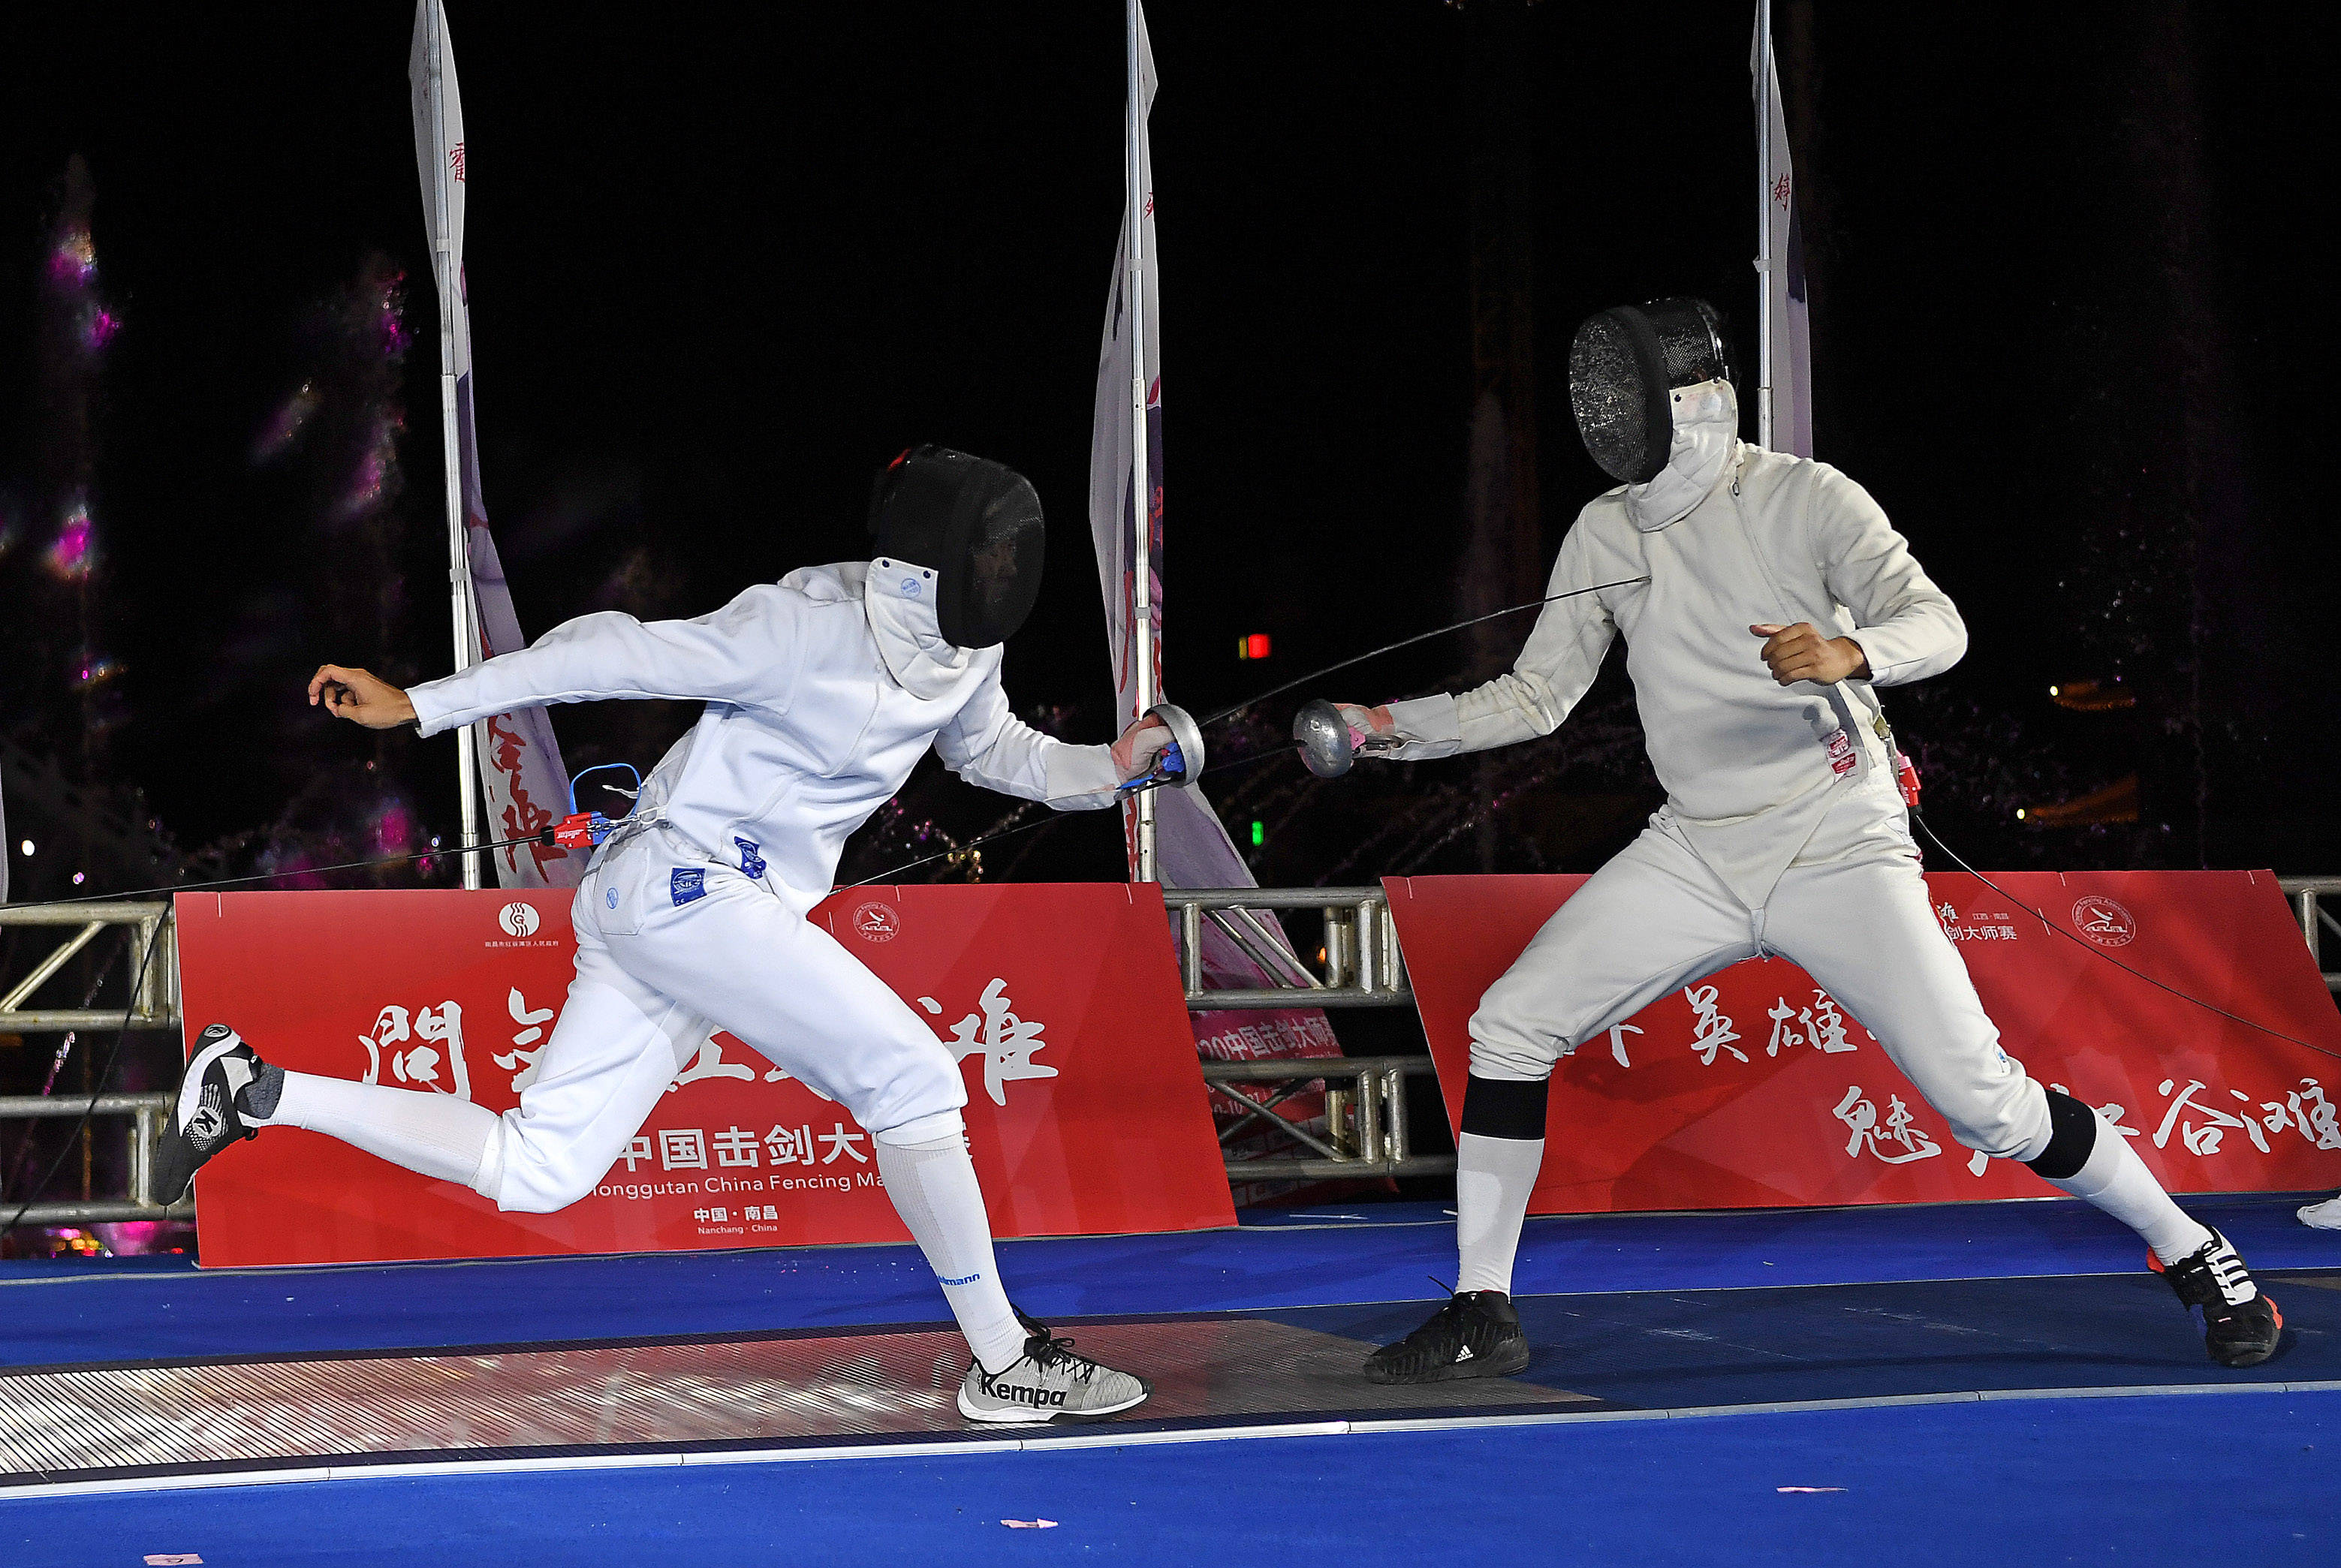 当日,2020中国击剑大师赛在南昌举行.在男子重剑决赛中,王子杰以15